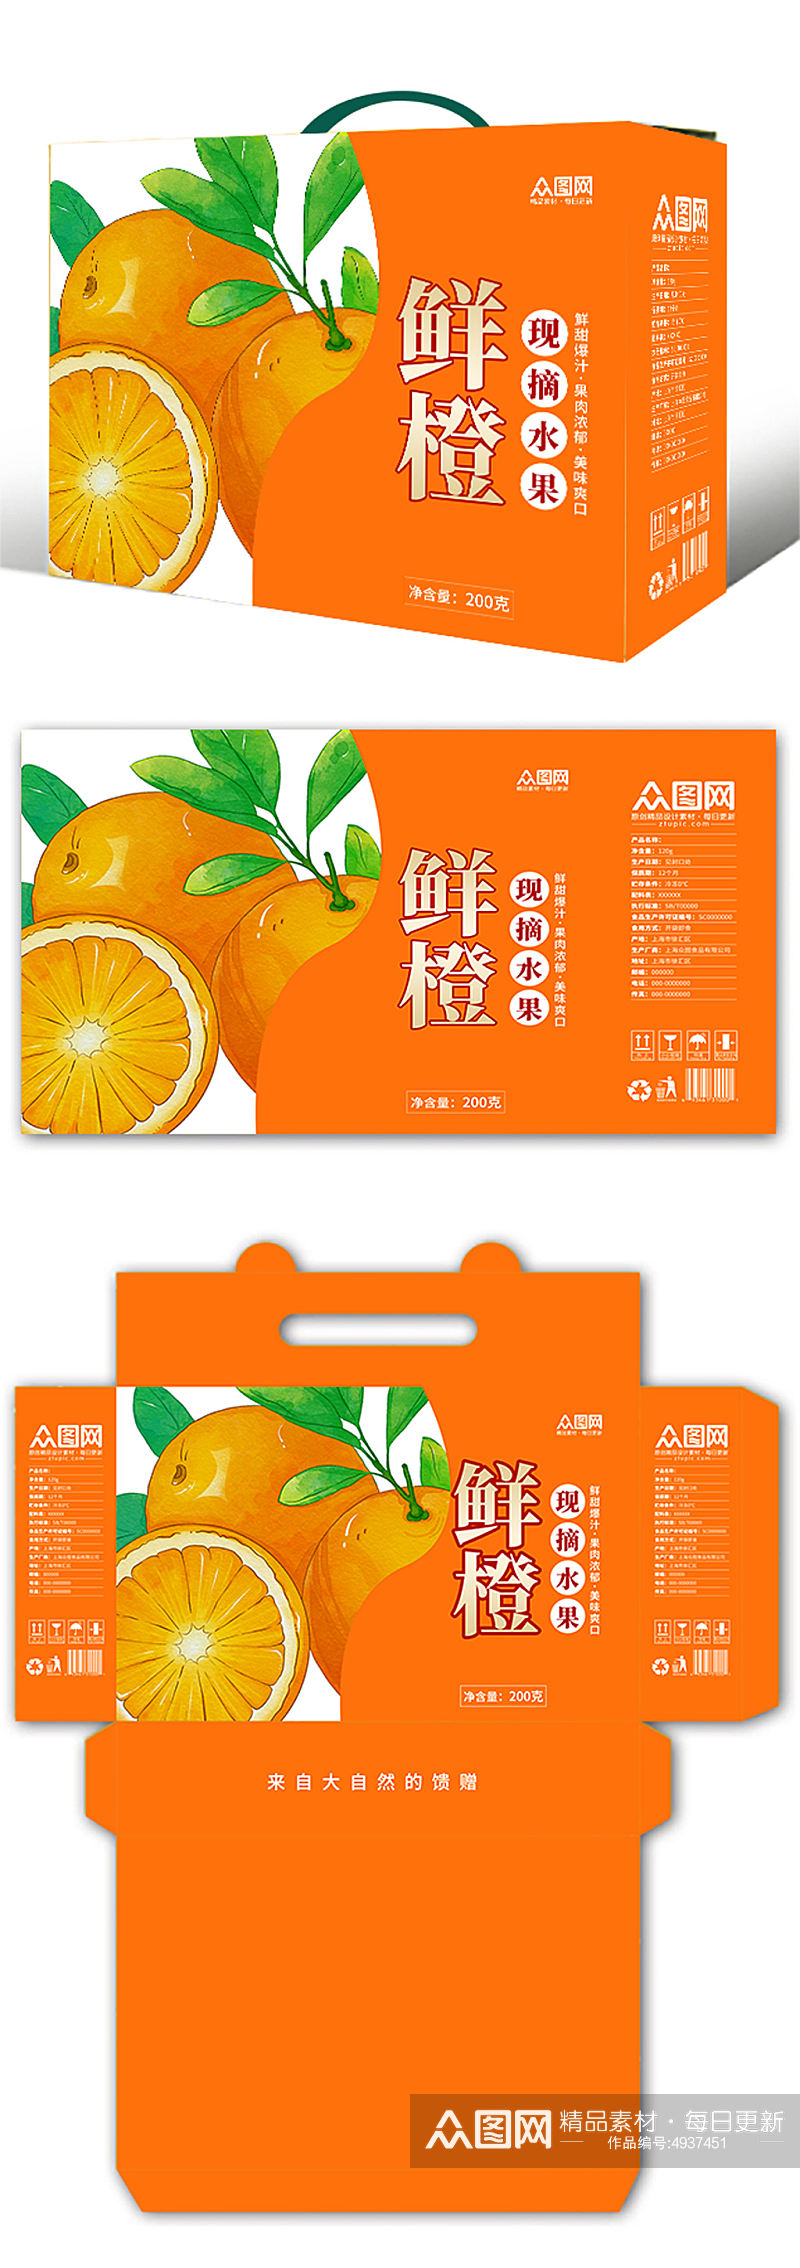 简约风鲜橙橙子礼盒包装设计素材